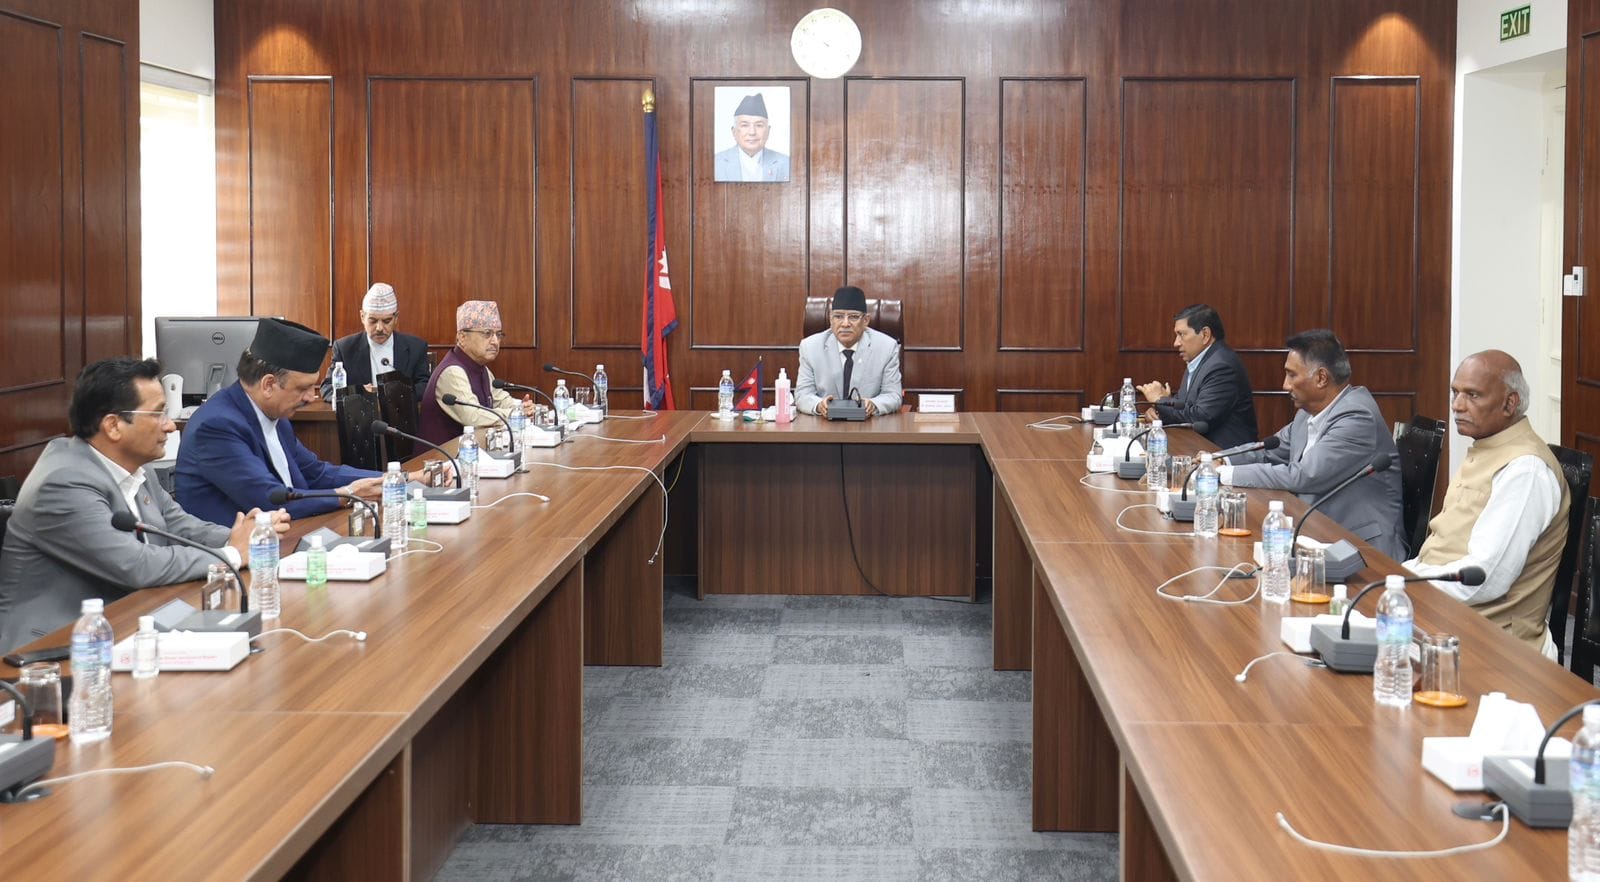 सुवास नेम्वाङको अन्त्येष्टिका दिन सार्वजनिक बिदा दिने मन्त्रिपरिषद बैठकको निर्णय